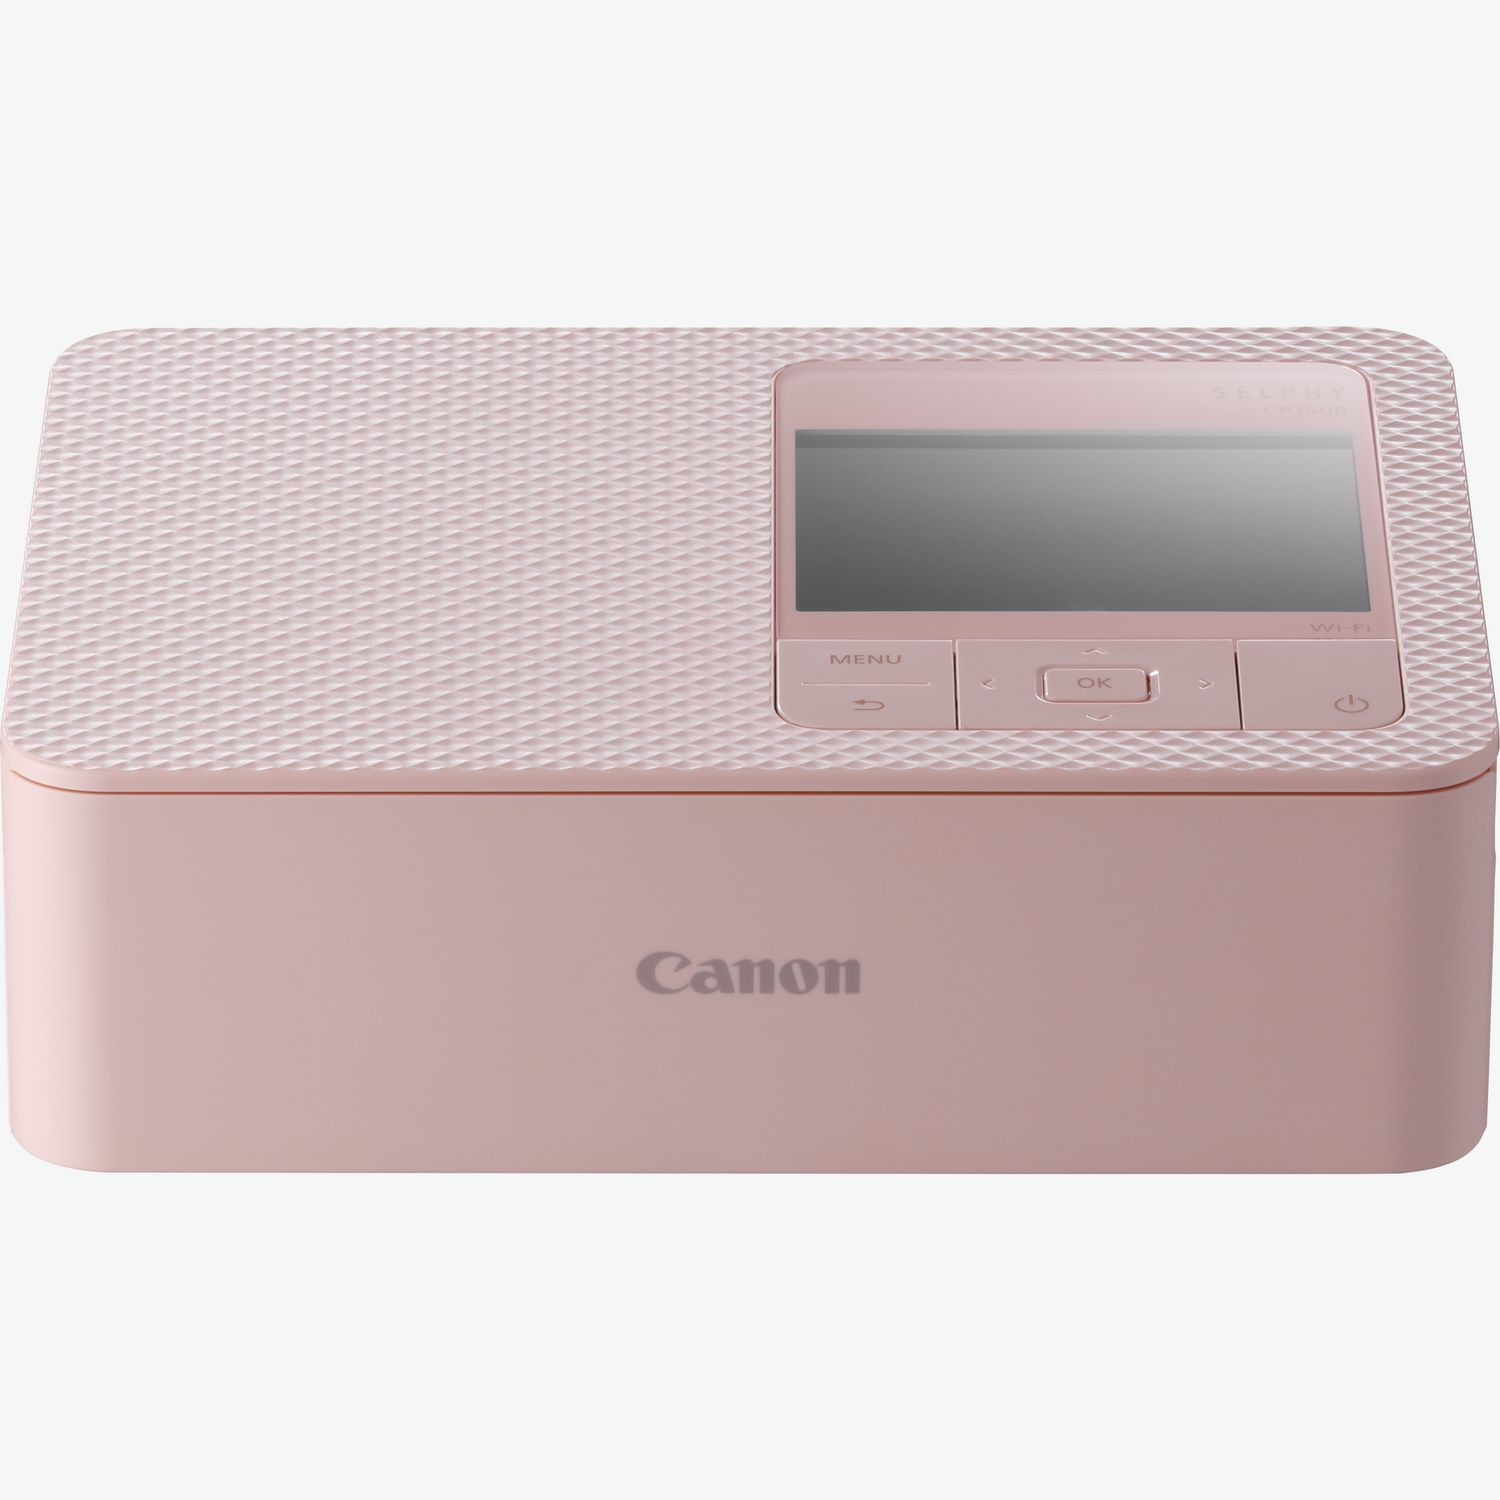 Stampante fotografica portatile a colori Canon Zoemini 2, rosa gold + Carta  fotografica ZINK™ 5 x 7,6 cm (20 fogli) + Carta adesiva circolare ZINK™ 3,3  cm (10 fogli) in Stampanti WiFi —